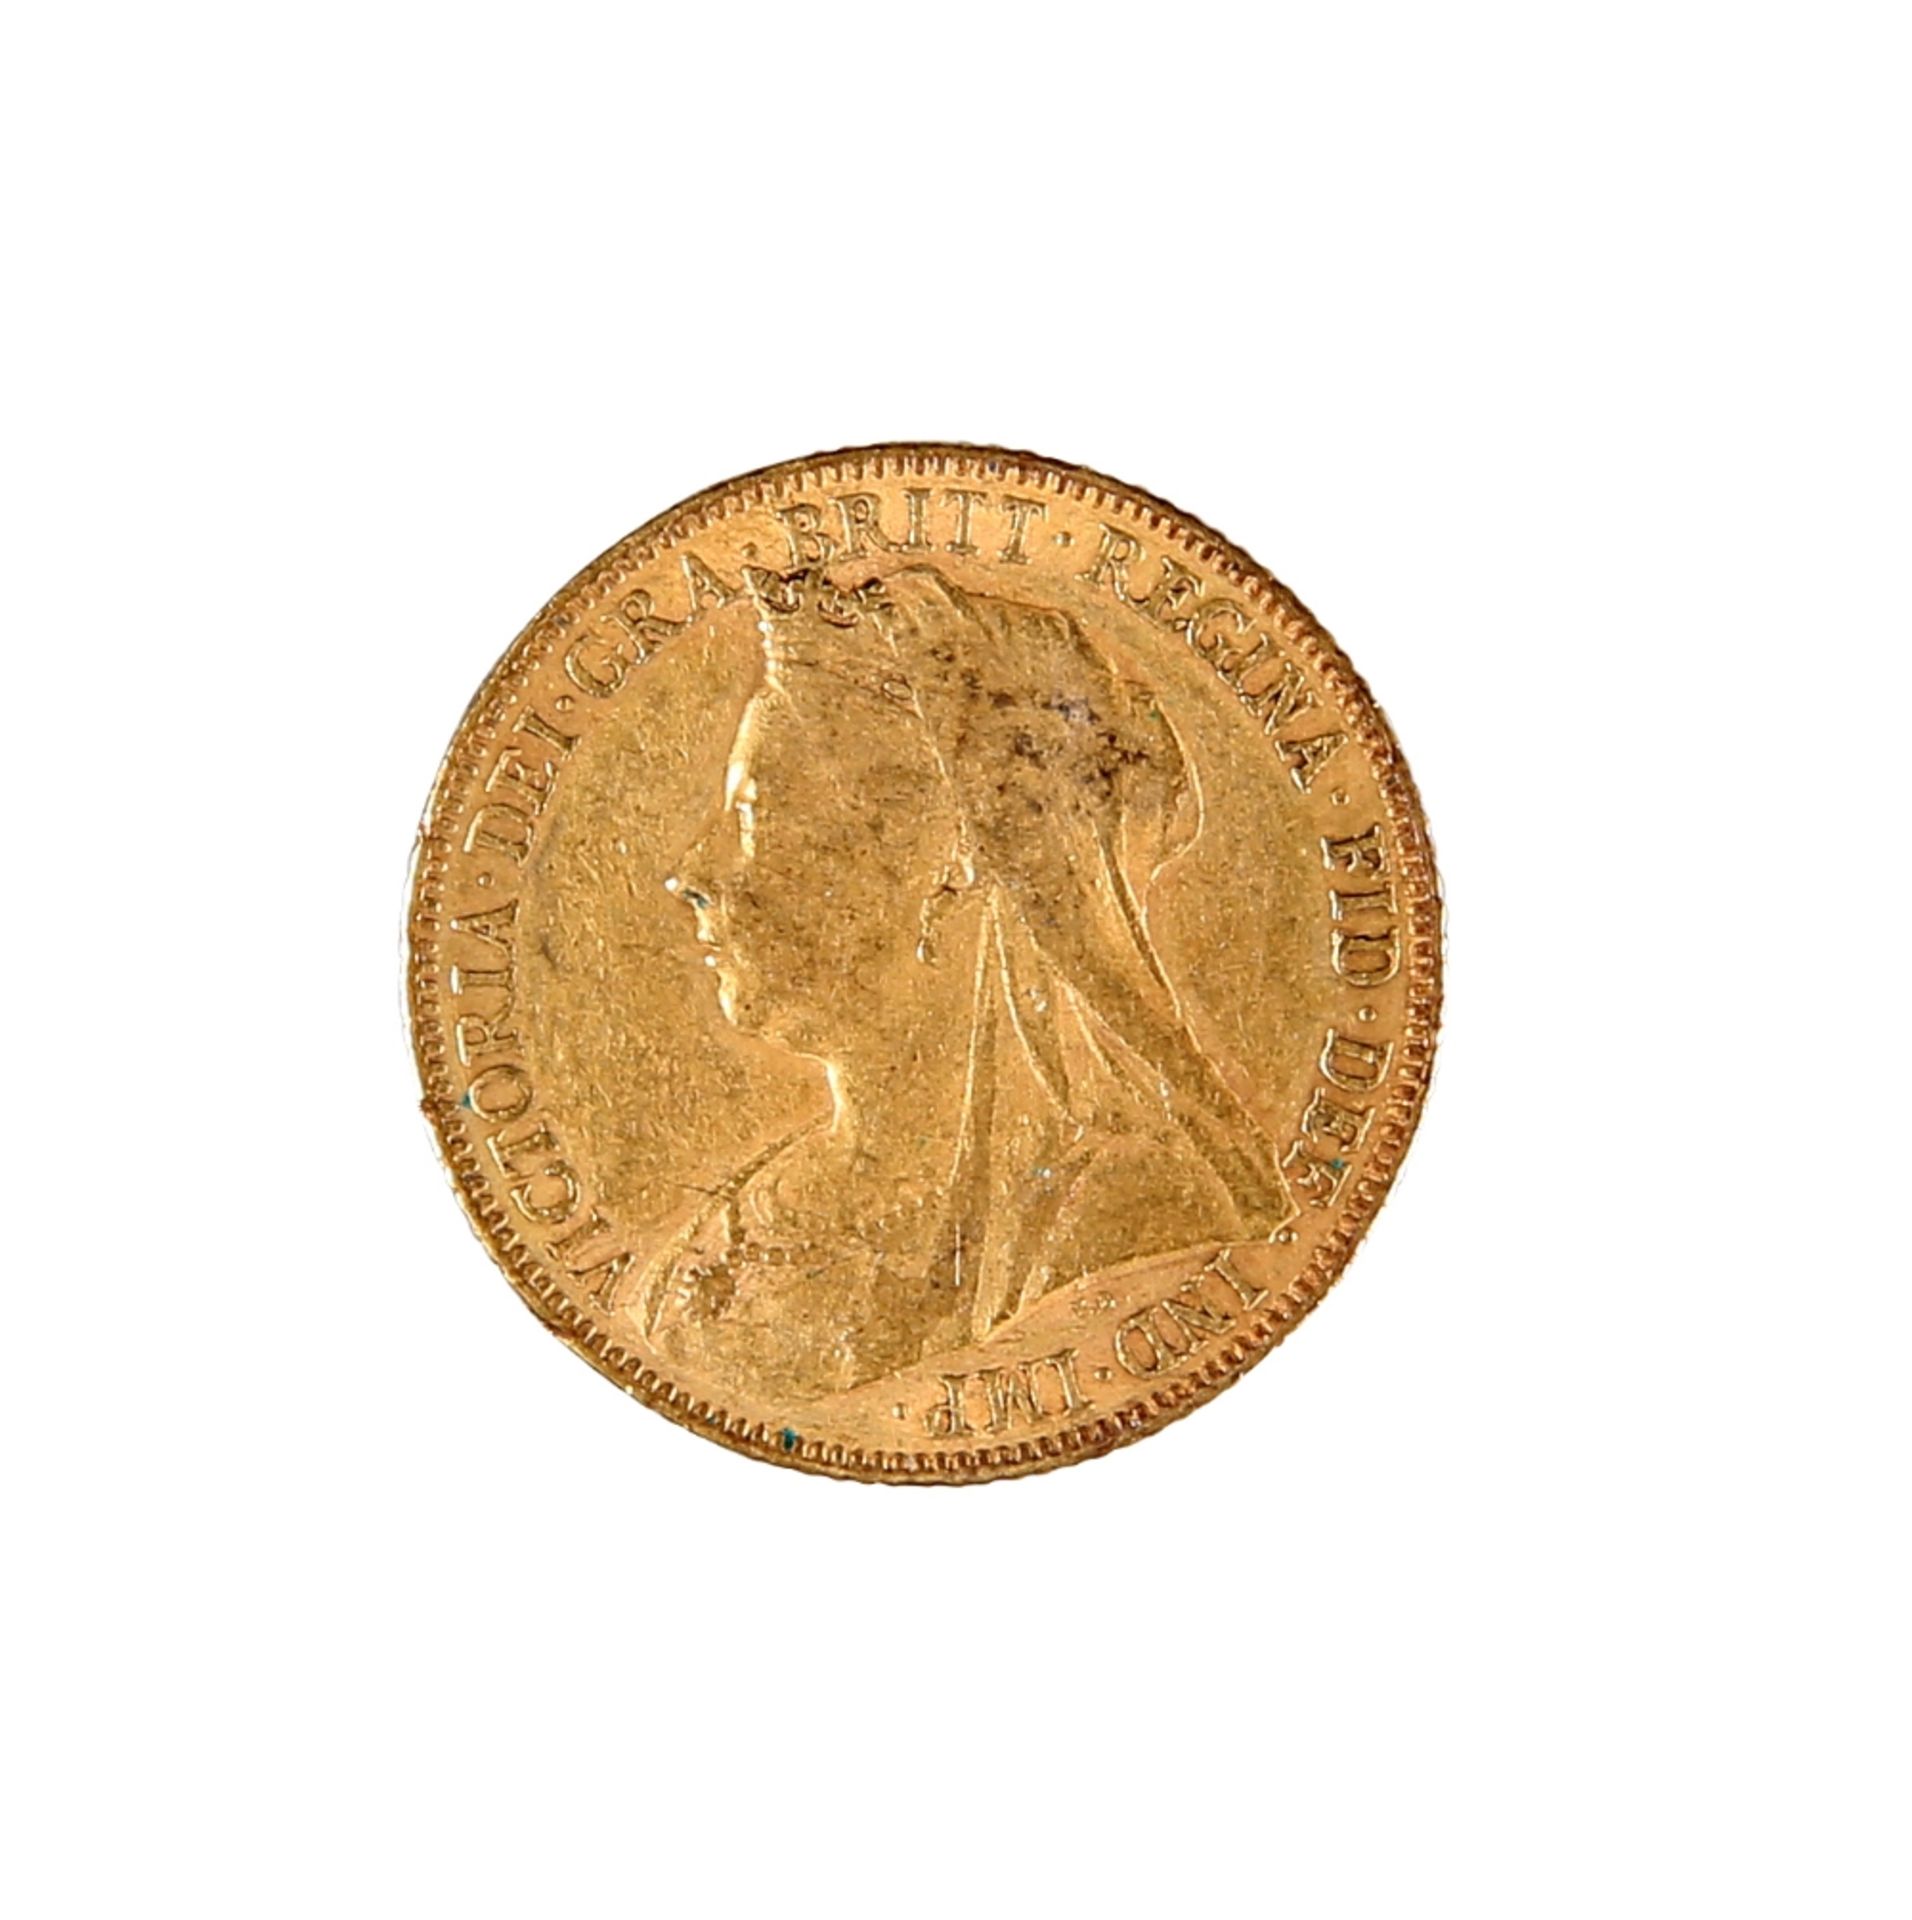 A VICTORIA GOLD SOVEREIGN, 1900.